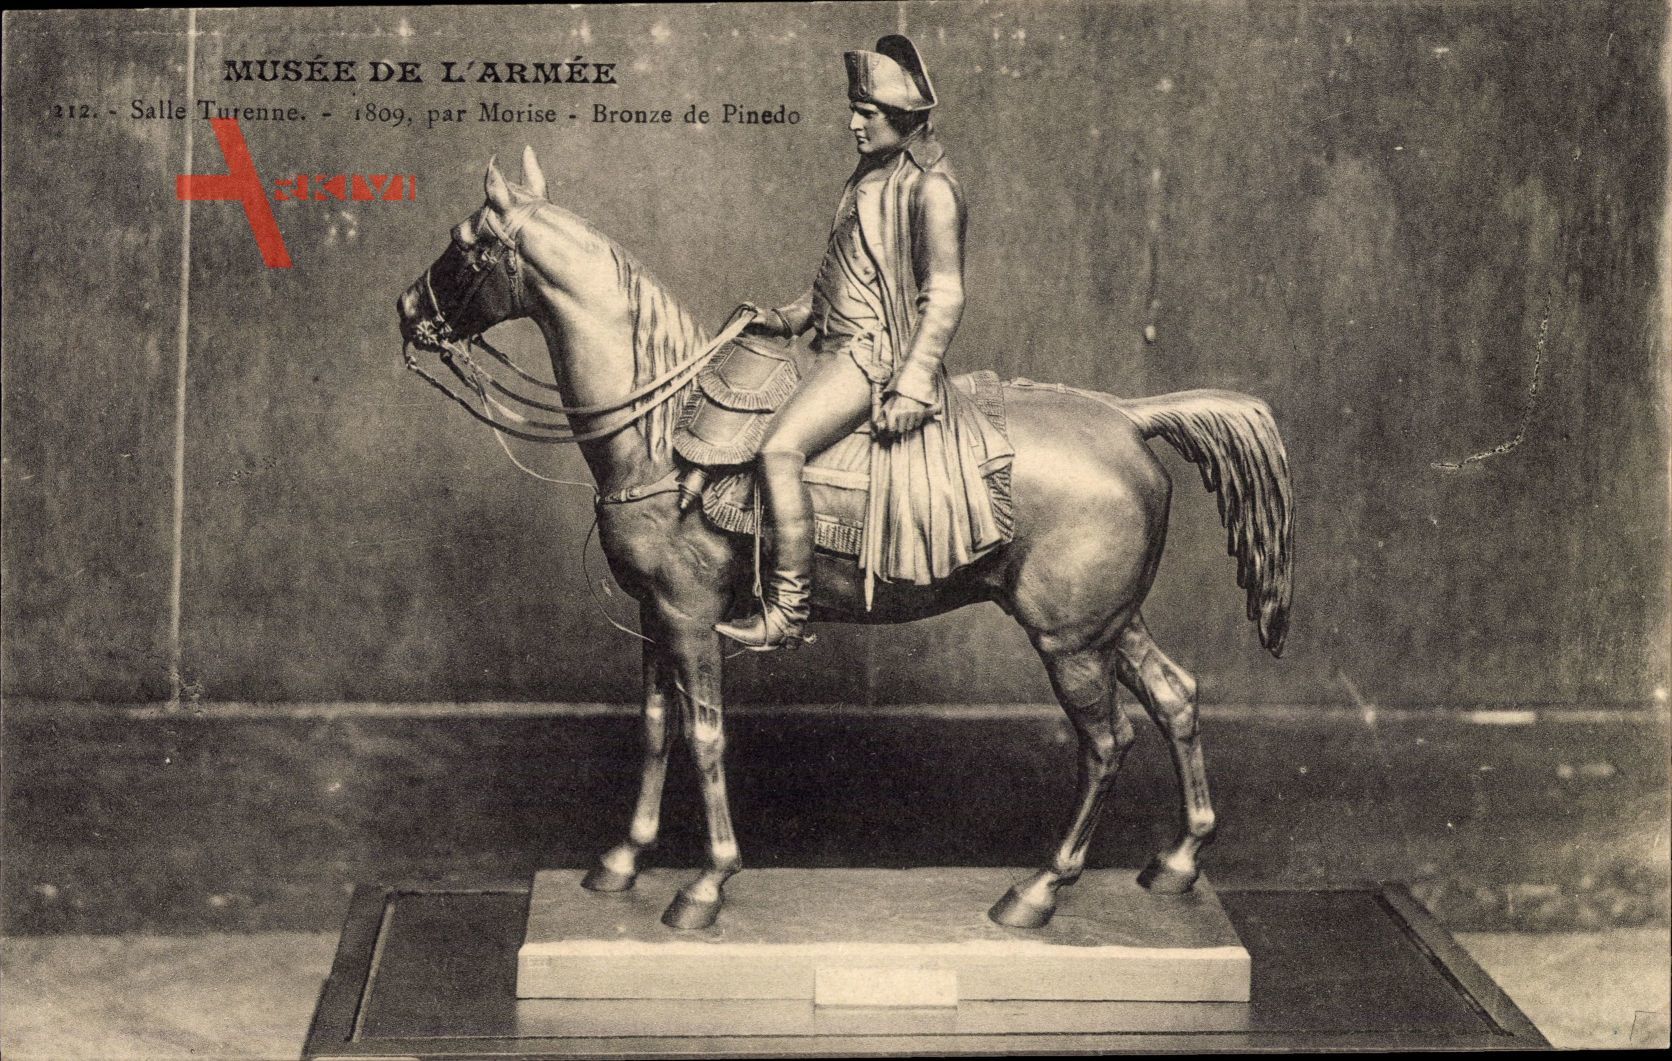 Reiterstandbild Napoleon, Bronze de Pinedo, Musee de l'Armee, Salle Turenne